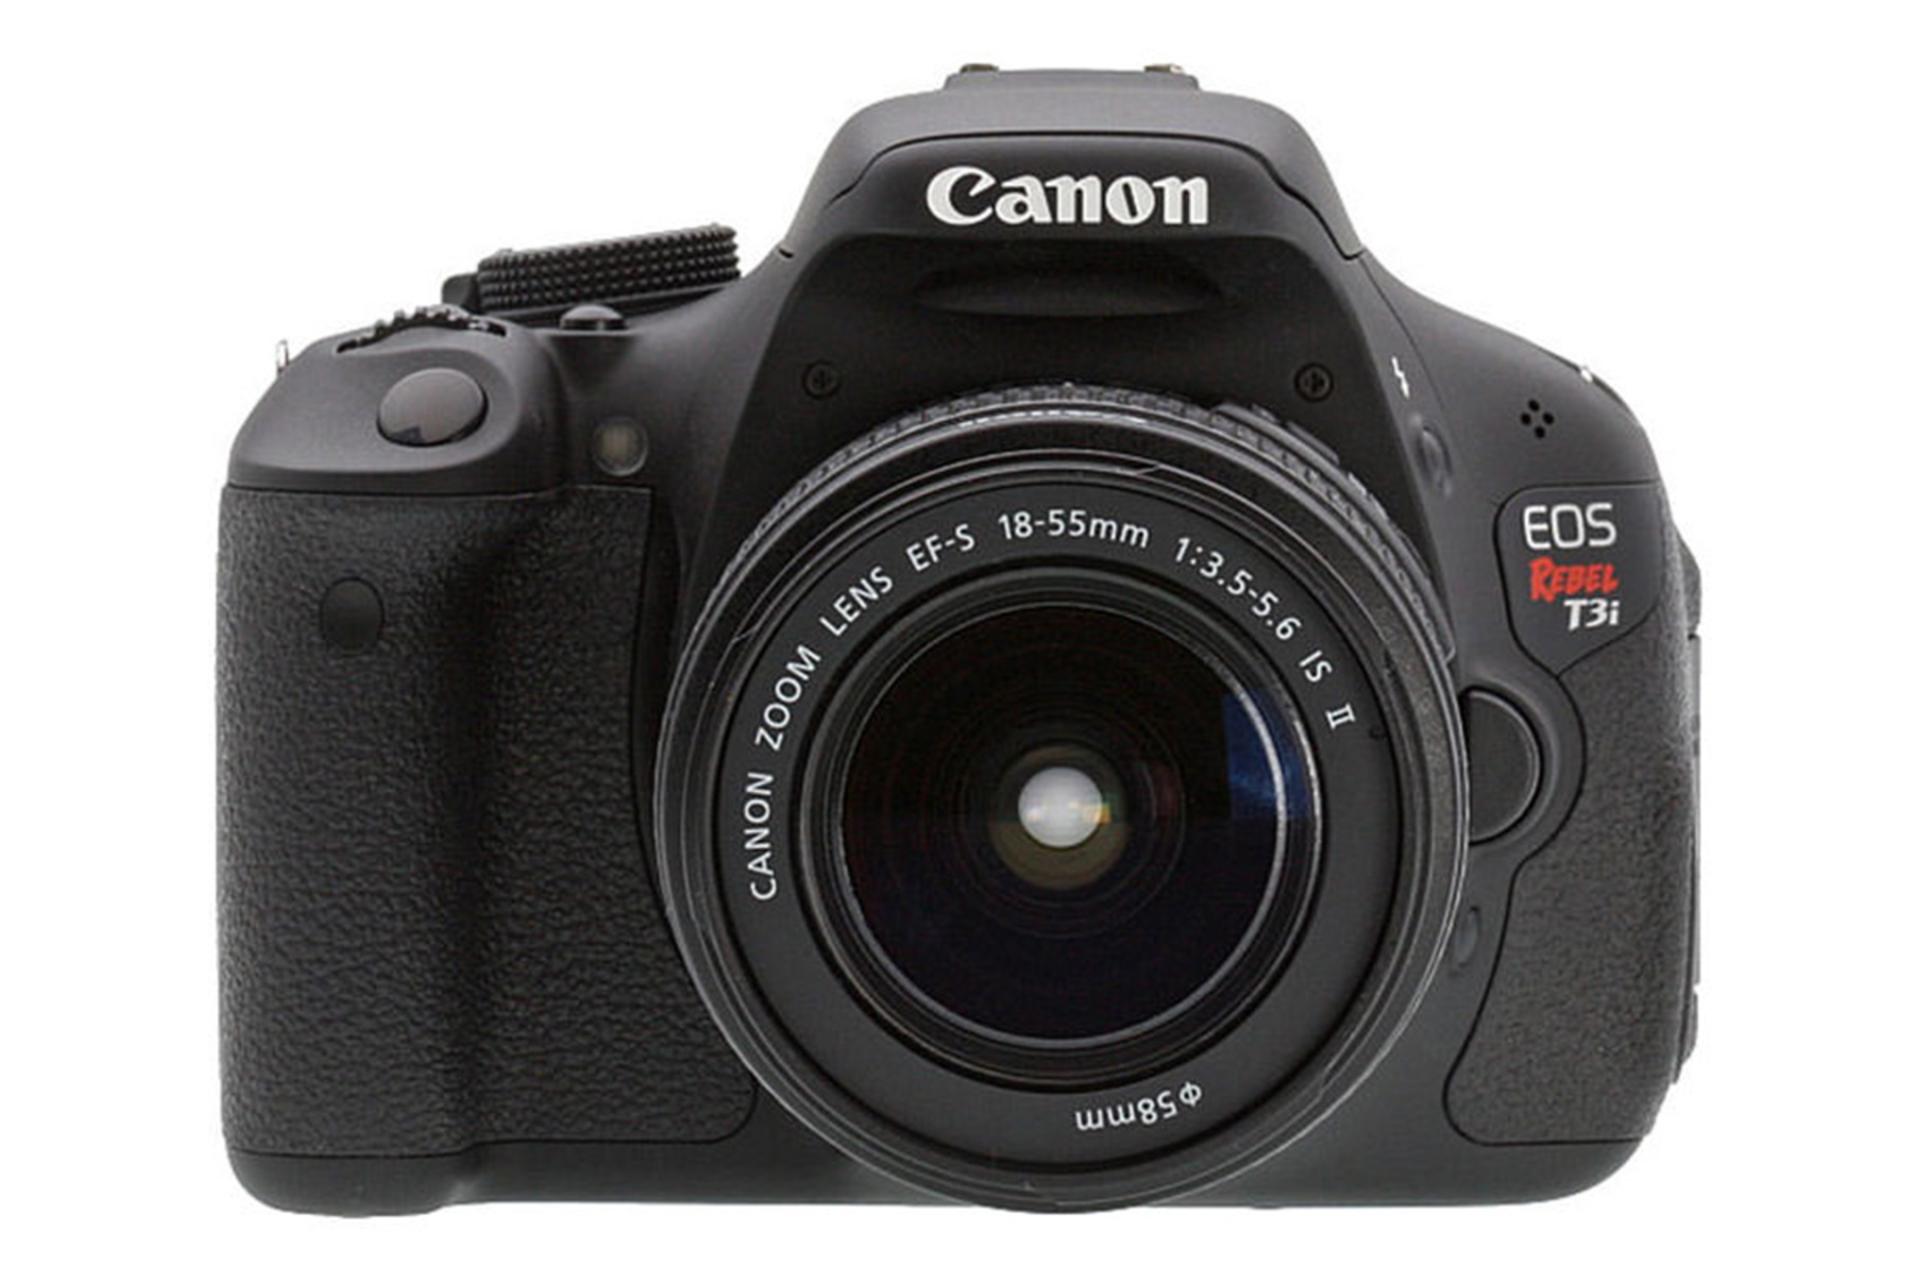 مرجع متخصصين ايران Canon EOS 600D (EOS Rebel T3i / EOS Kiss X5) / كانن